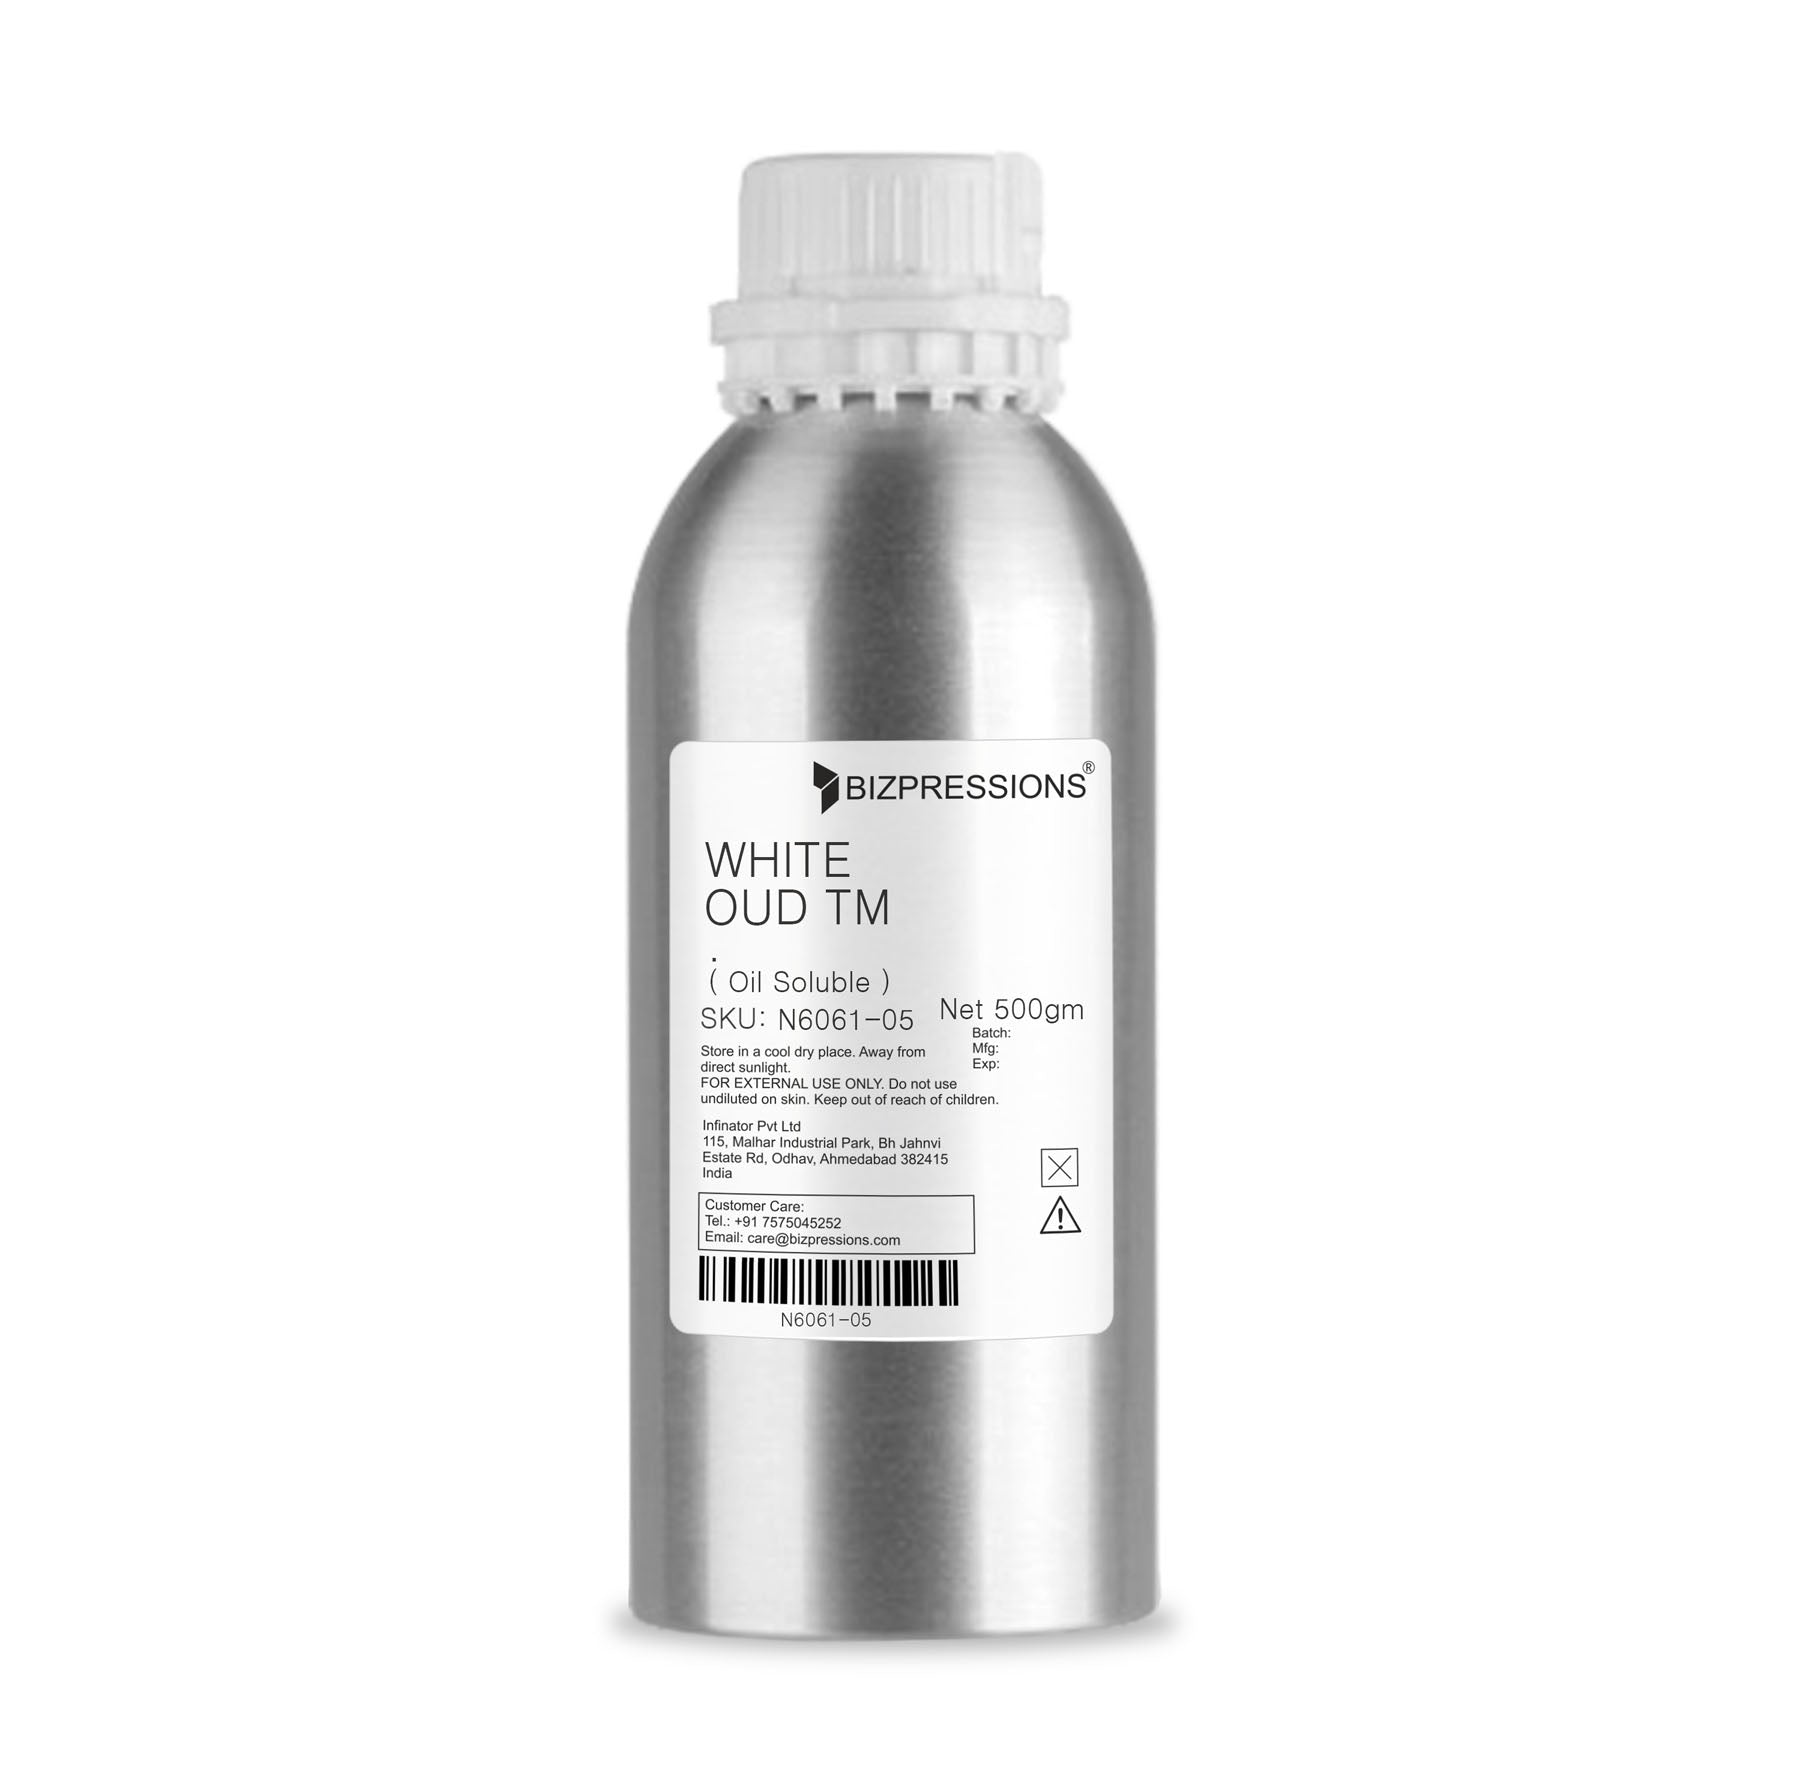 WHITE OUD TM - Fragrance ( Oil Soluble ) - 500 gm